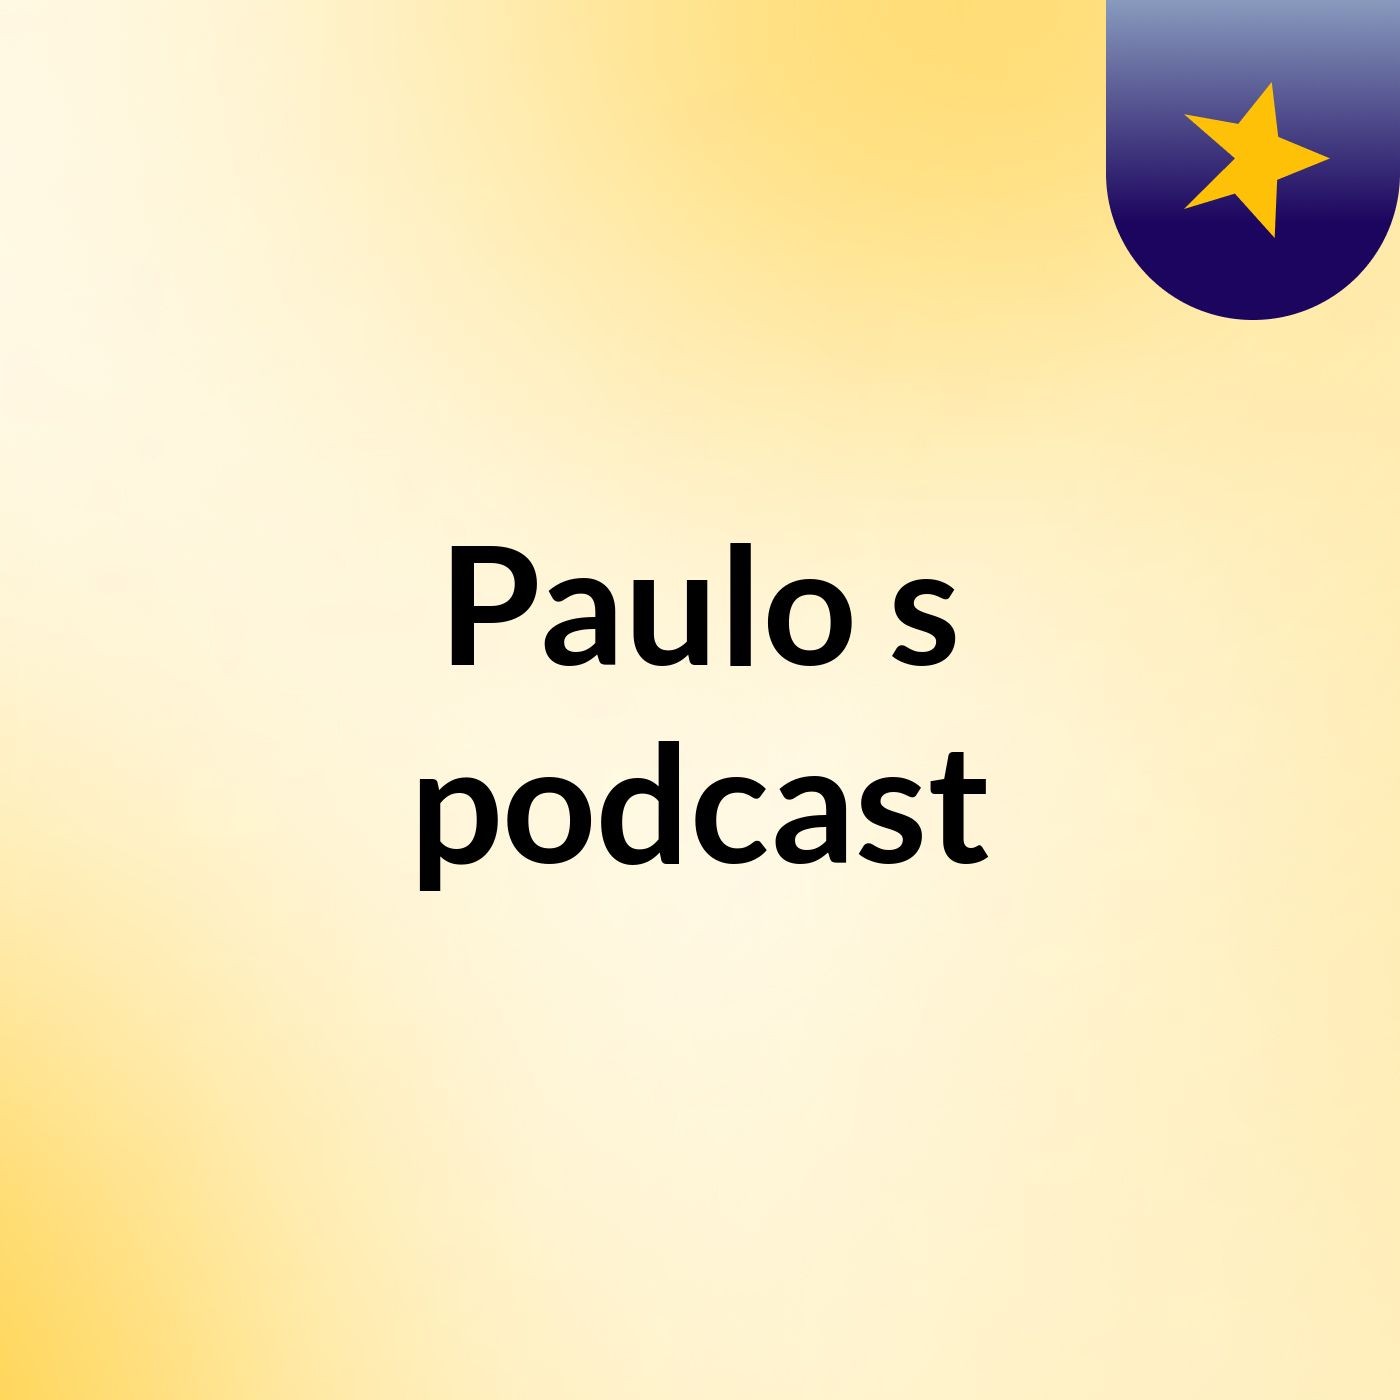 Paulo's podcast